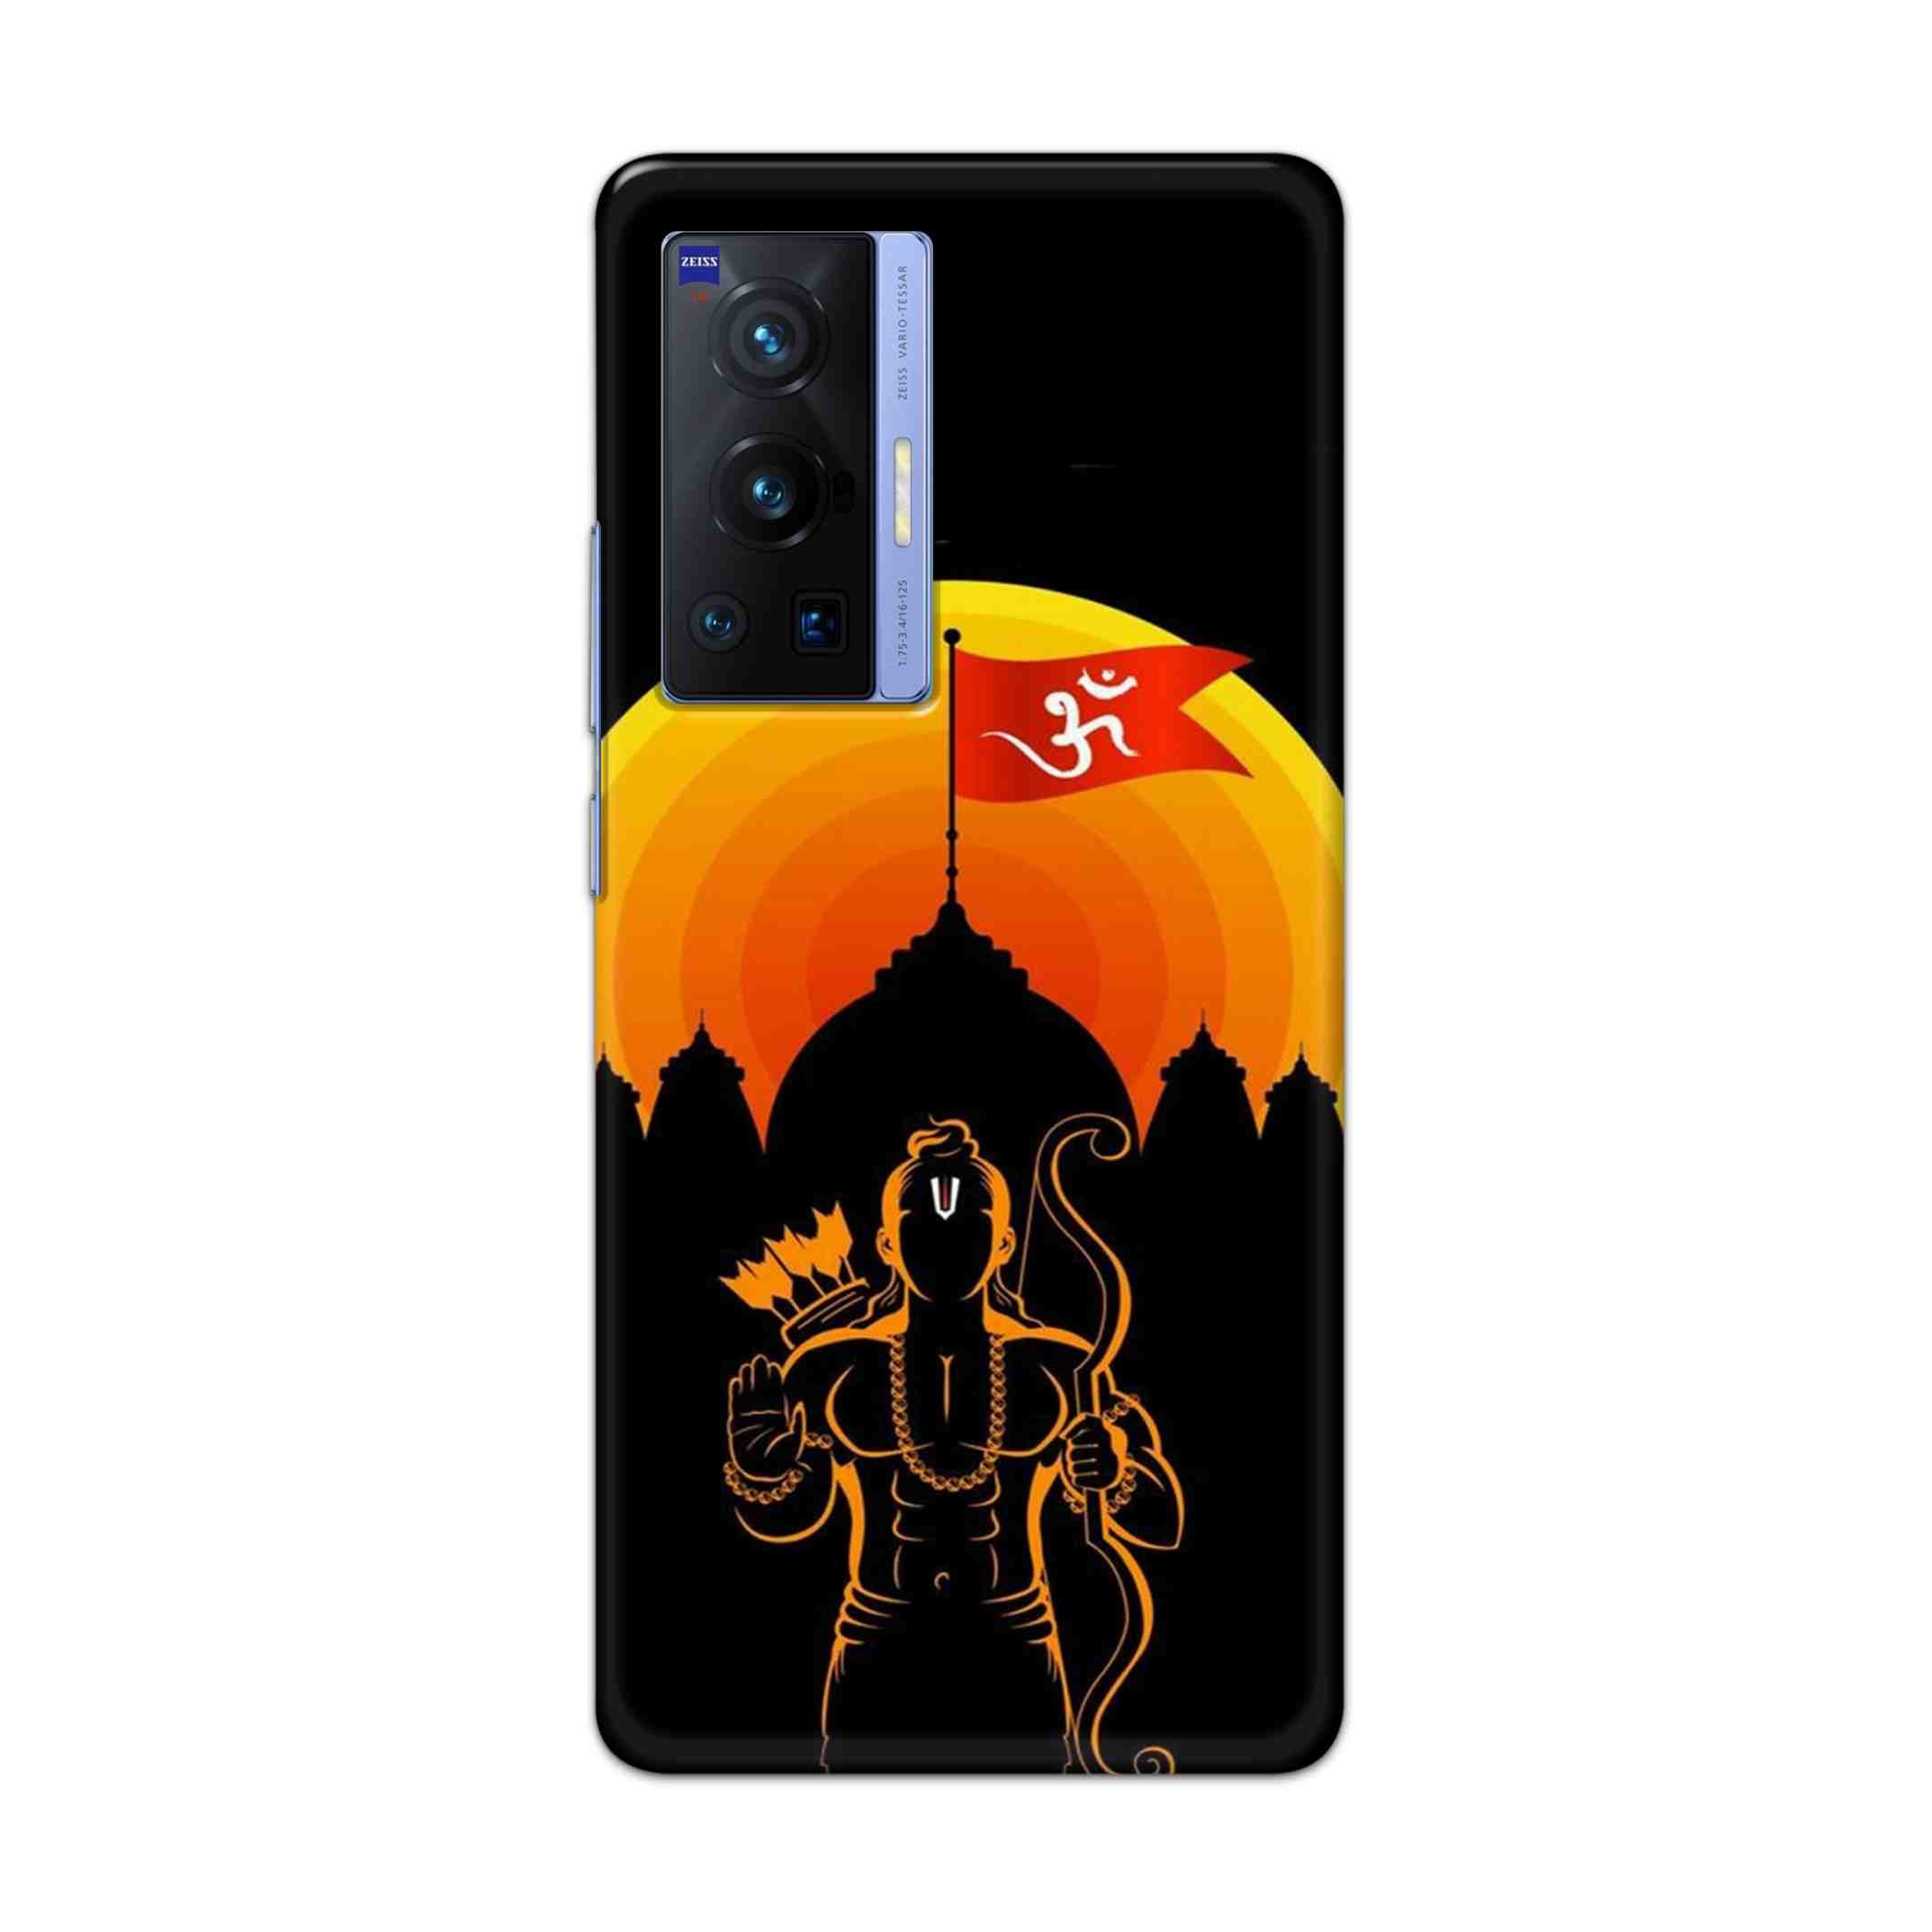 Buy Ram Ji Hard Back Mobile Phone Case Cover For Vivo X70 Pro Online